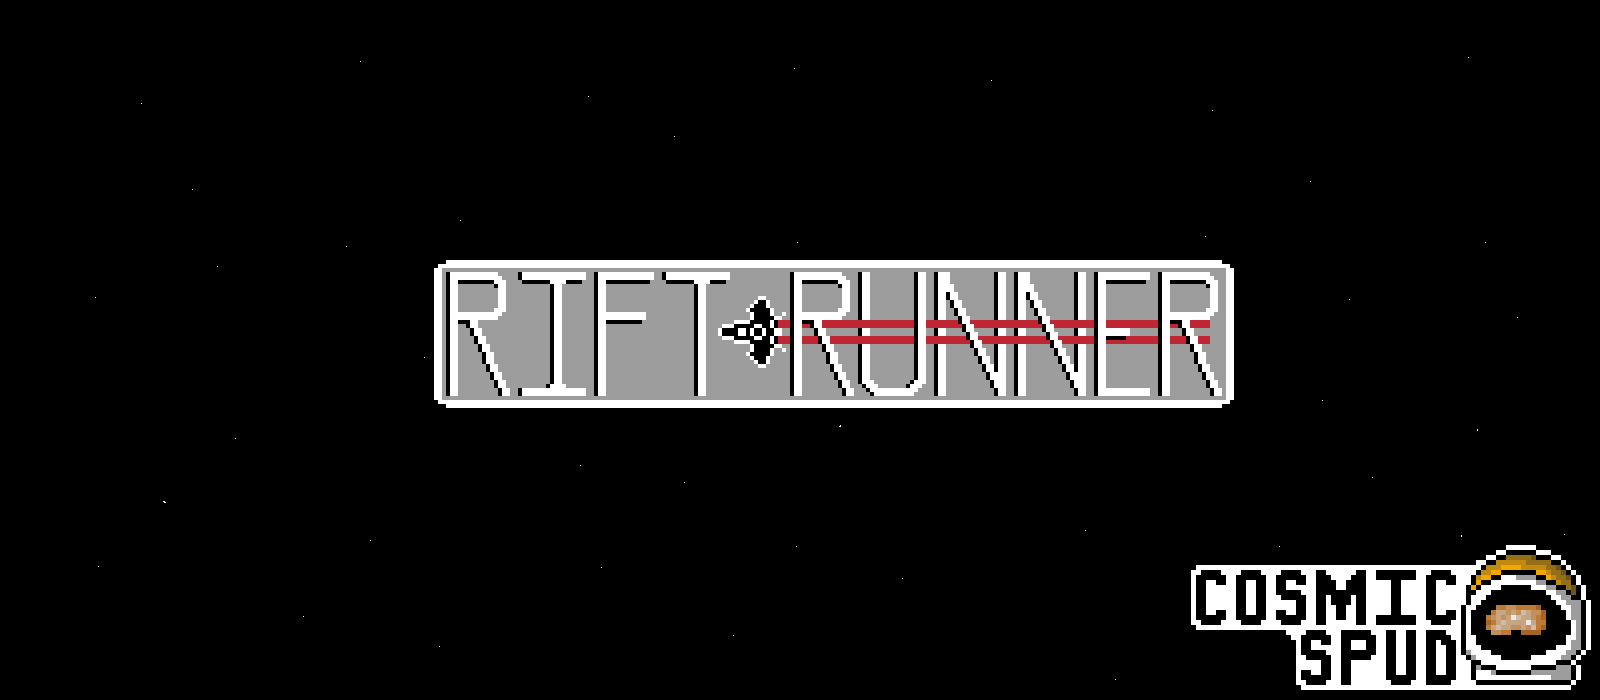 Rift Runner